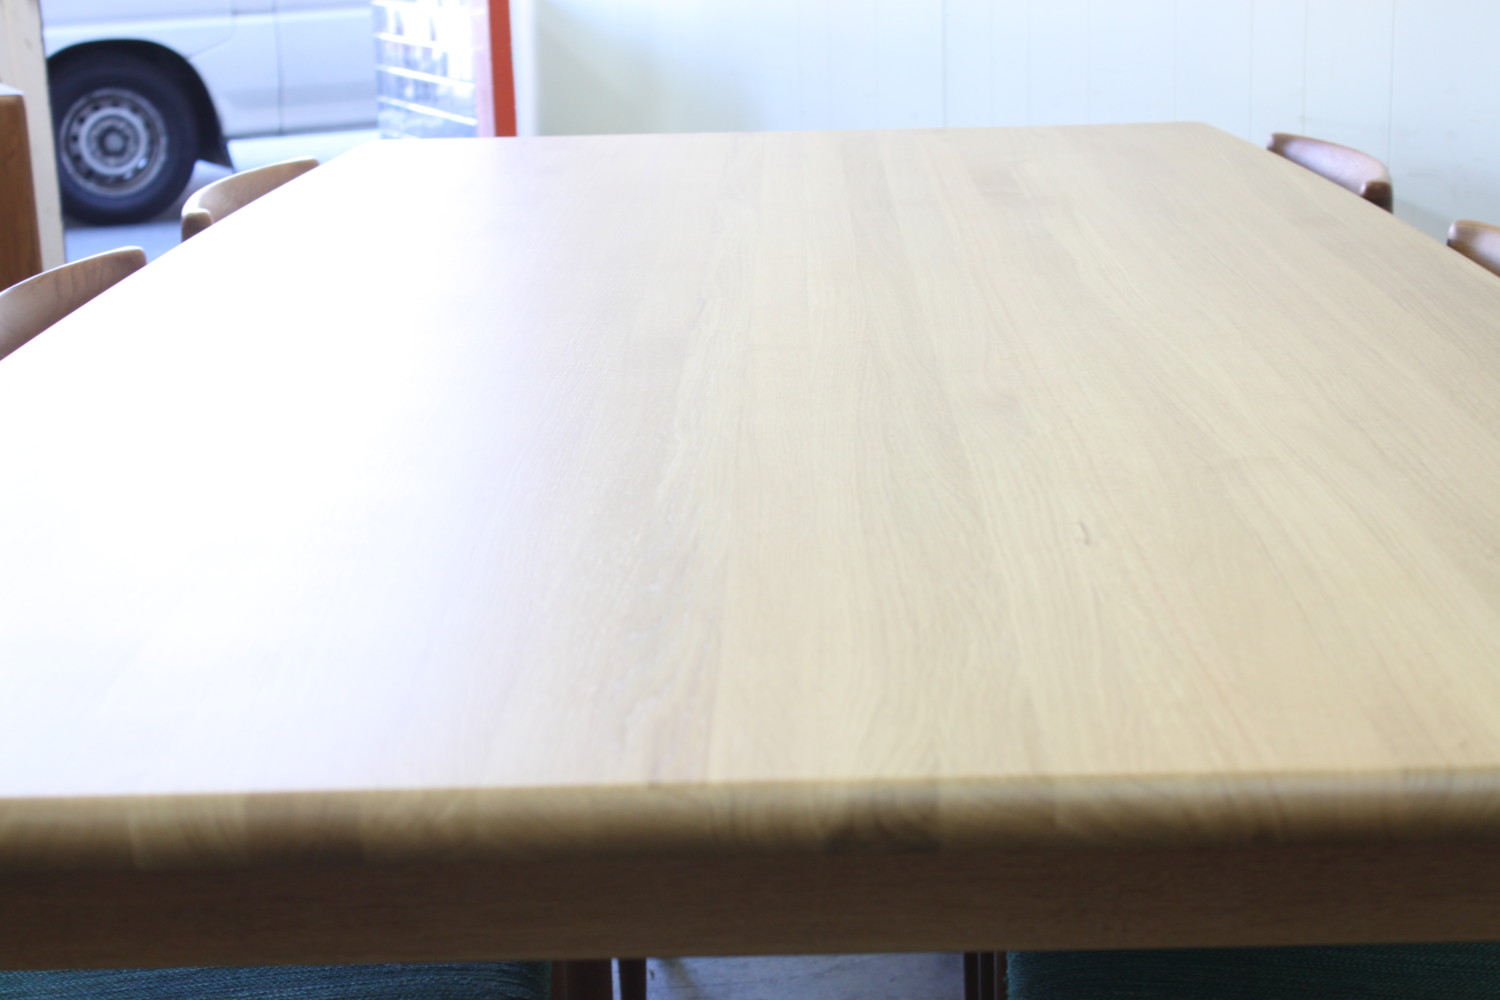 XL oak Table by Niels Moller